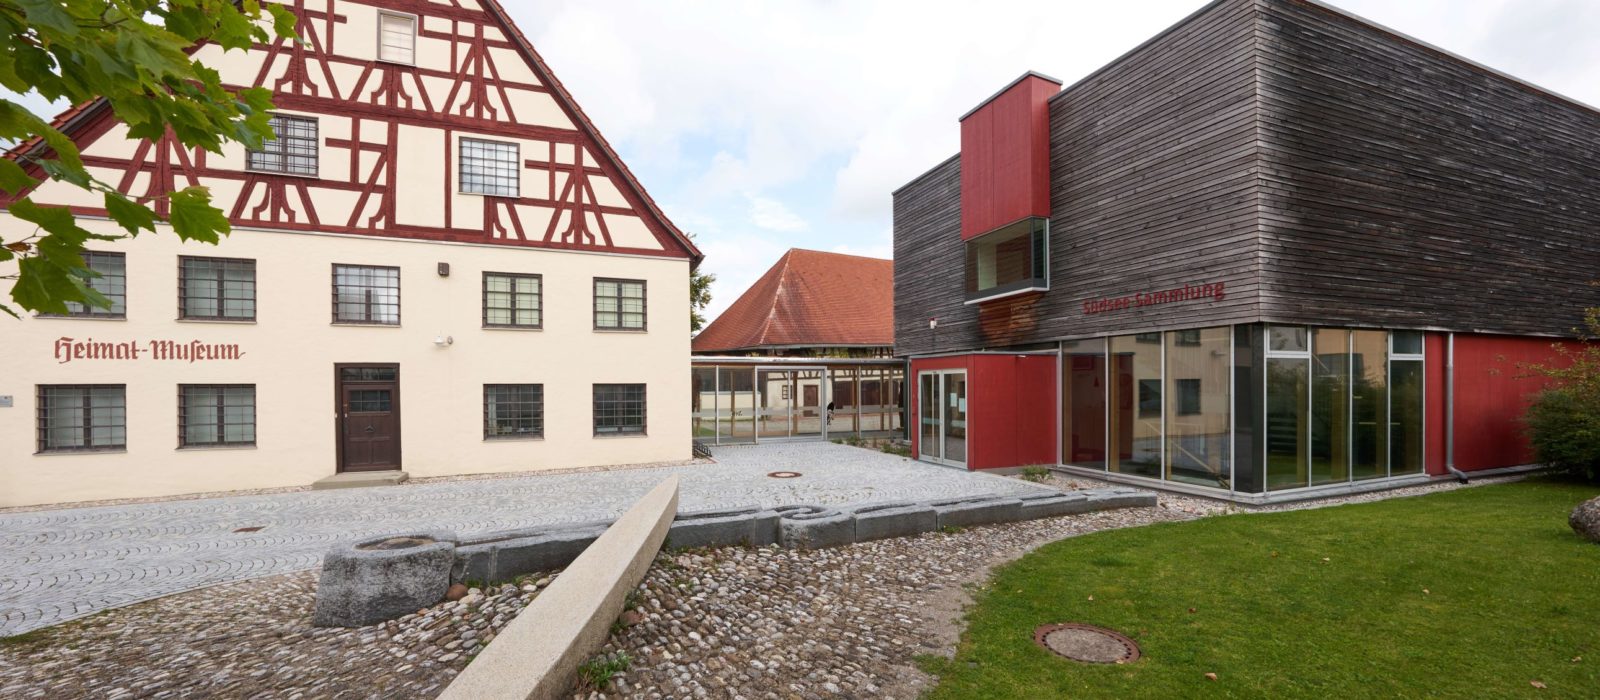 Südsee Sammlung und Historisches Museum Obergünzburg